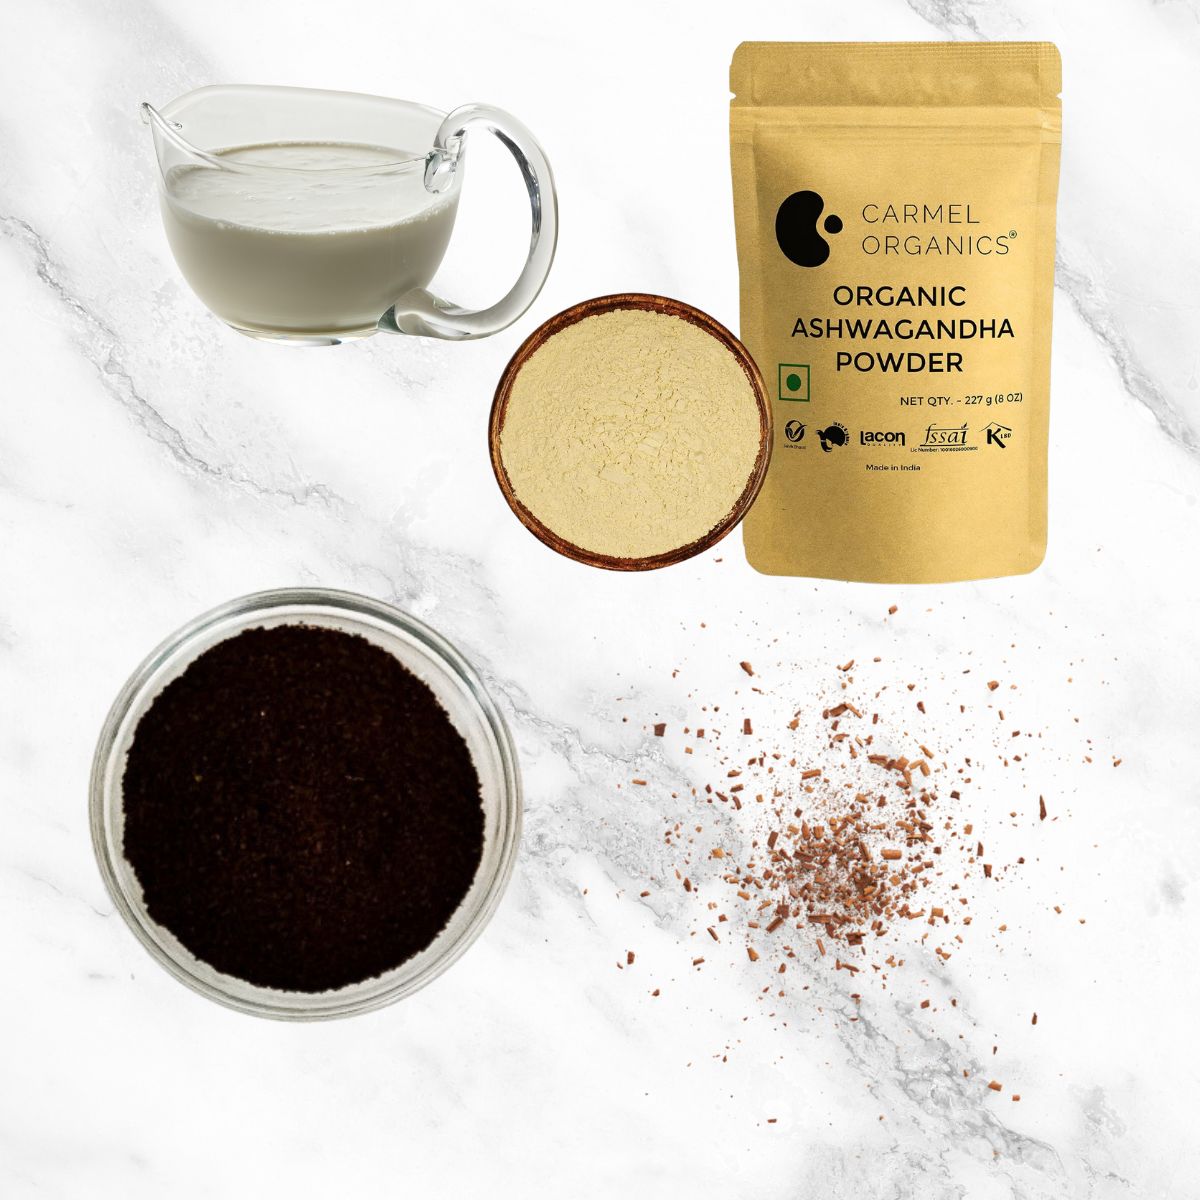 Milk, Ashwagandha Powder, Coffee and Cinnamon - the ingredients in Ashwagandha Coffee